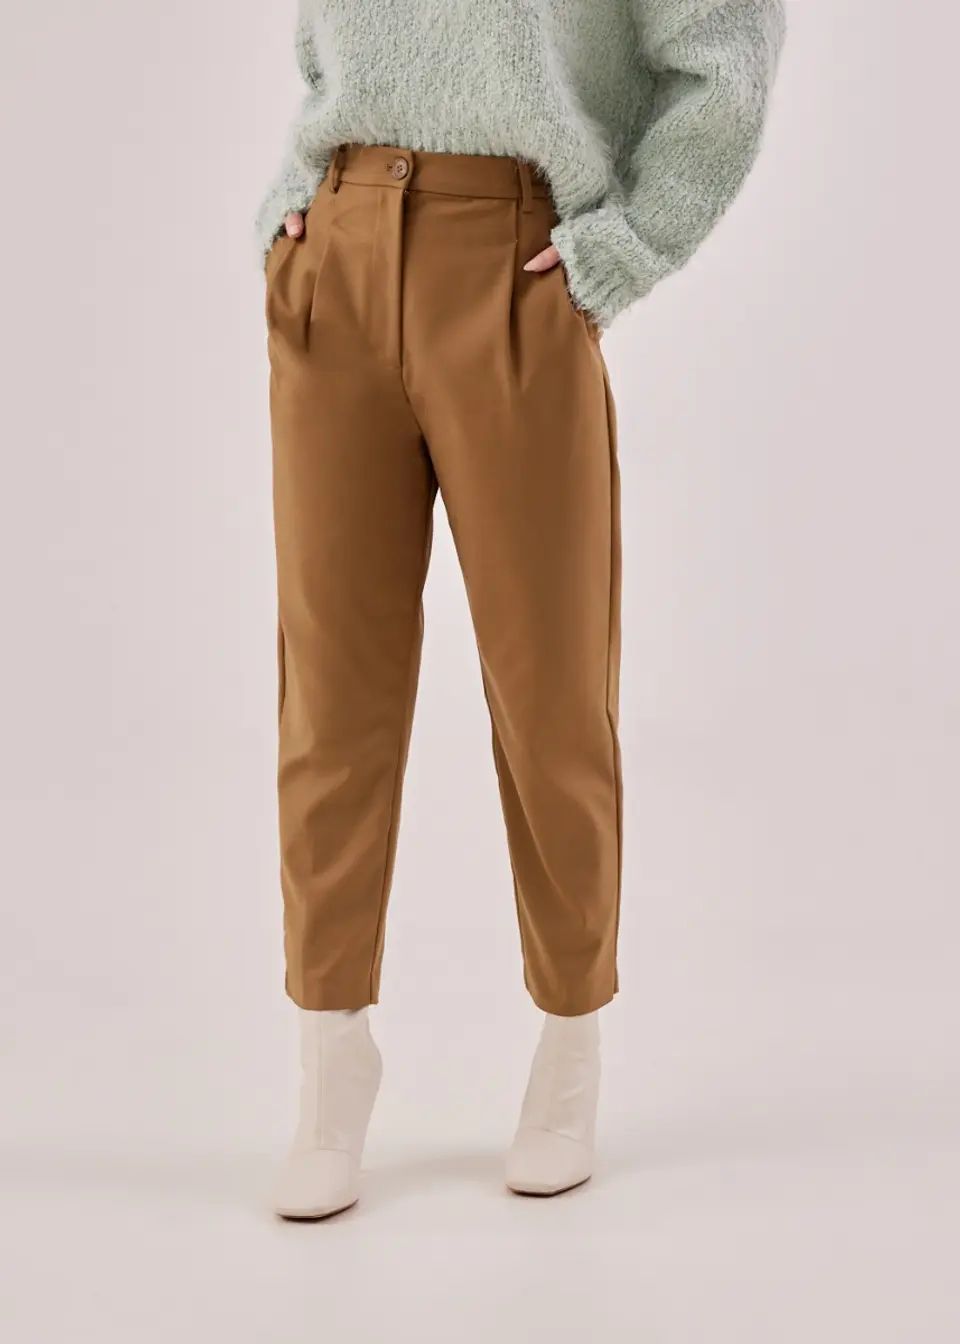 Buy Tamri Peg Leg Trousers @ Love, Bonito | Shop Women's Fashion Online | Shop New Arrivals Onlin... | LOVEBONITO SINGAPORE PTE LTD